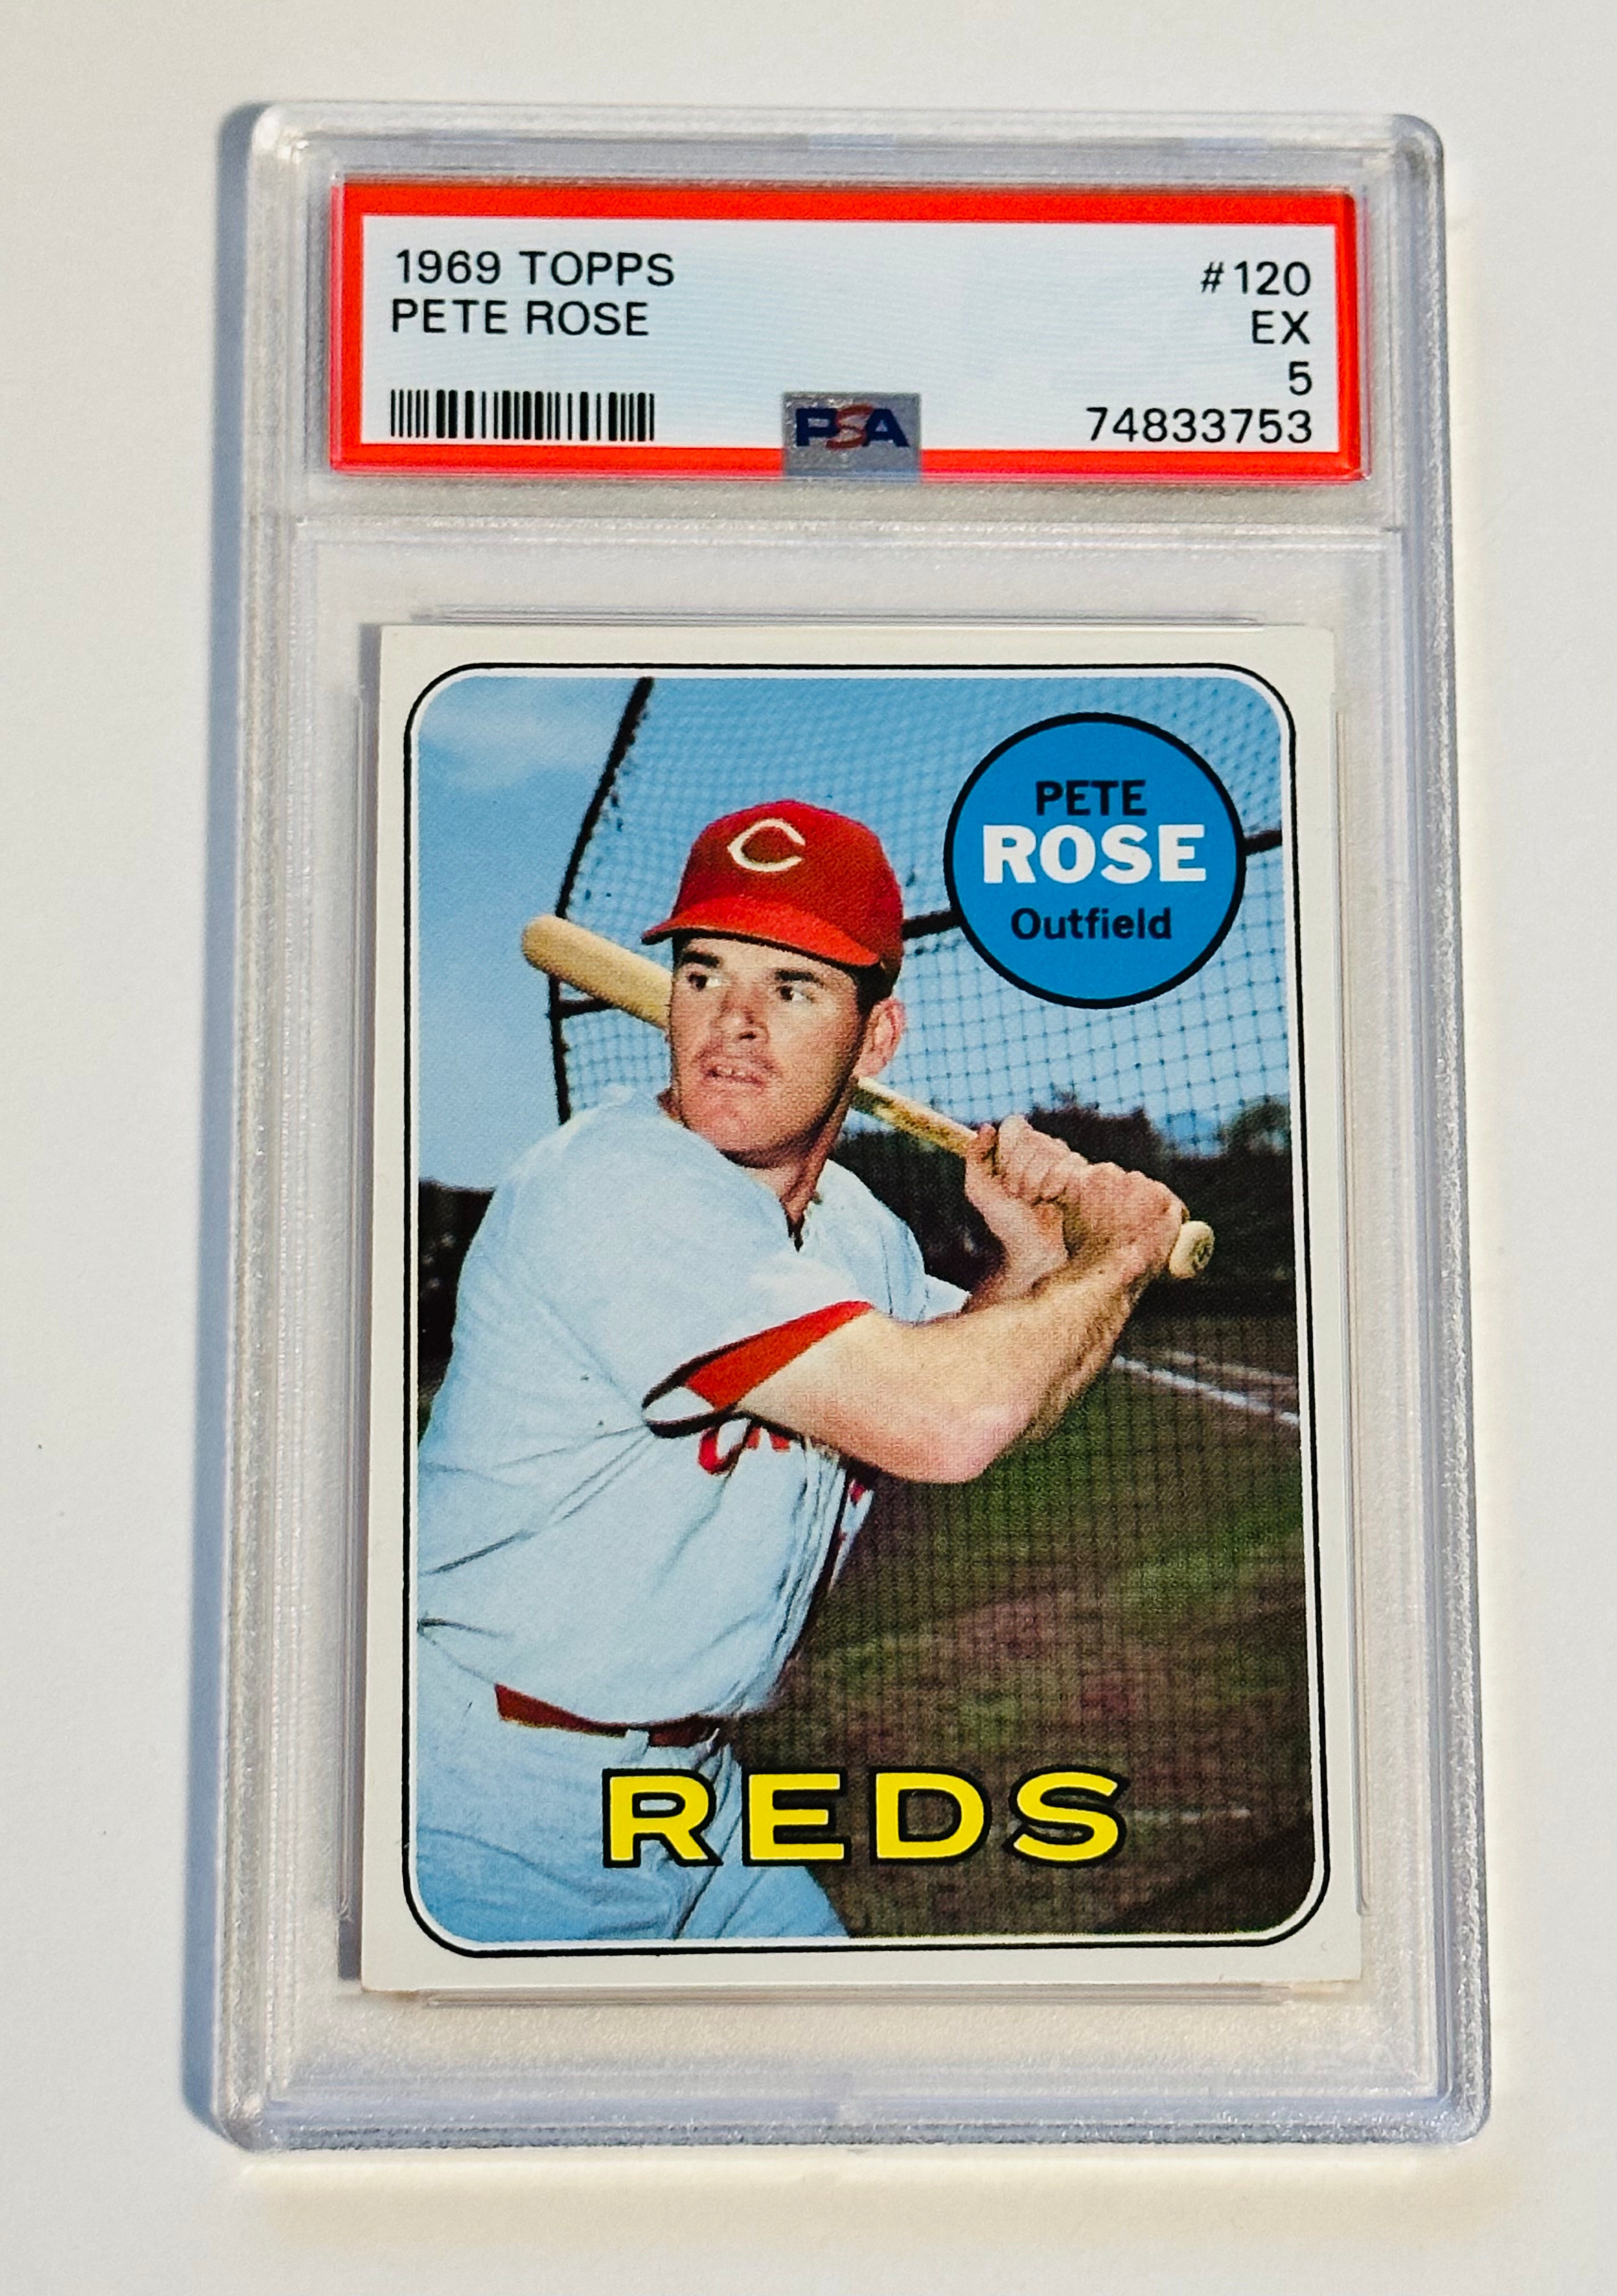 1969 Topps Pete Rose PSA 5 graded baseball card